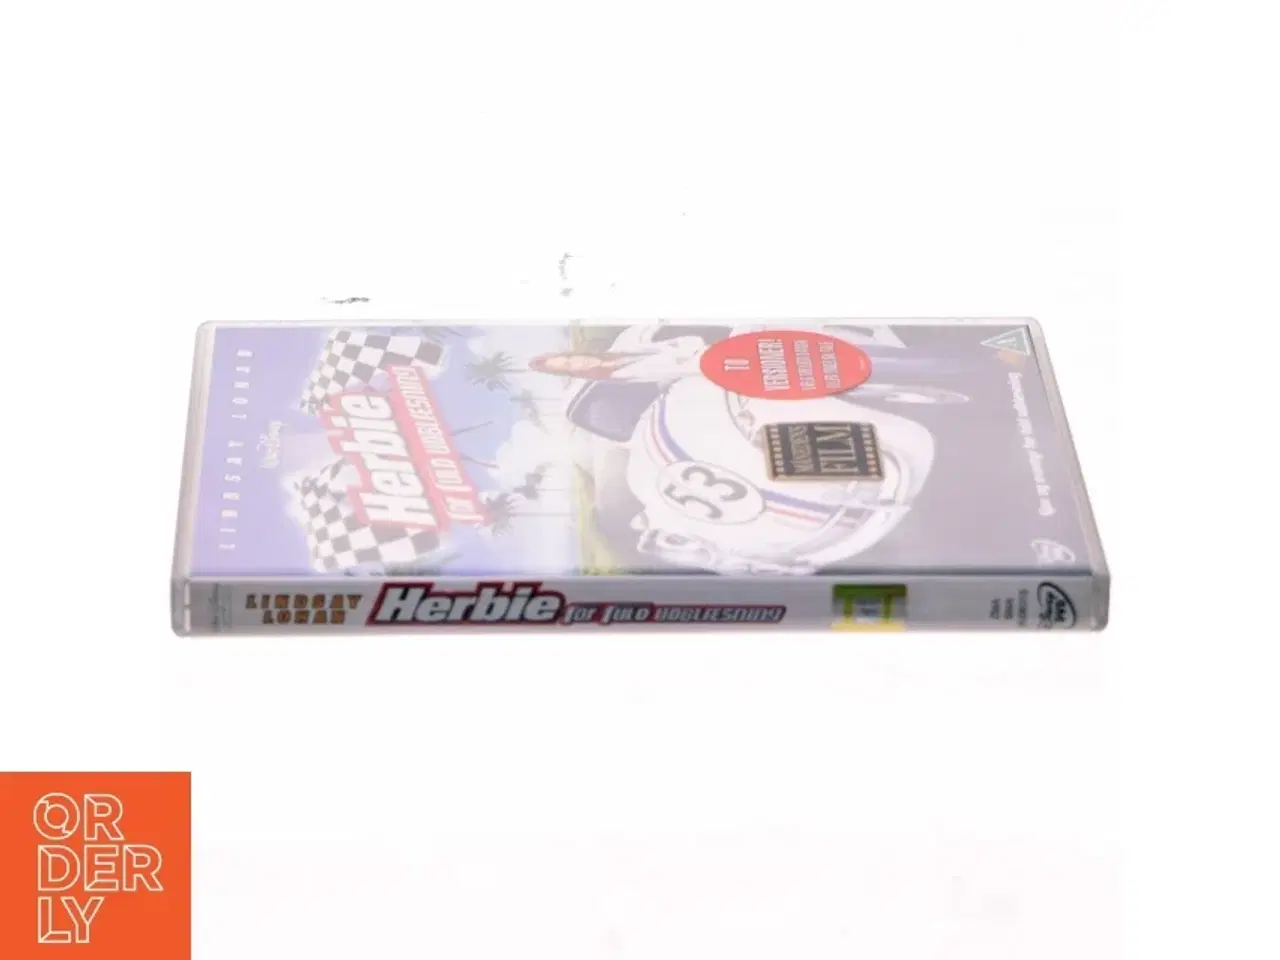 Billede 2 - Herbie for fuld udblæsning (dvd)